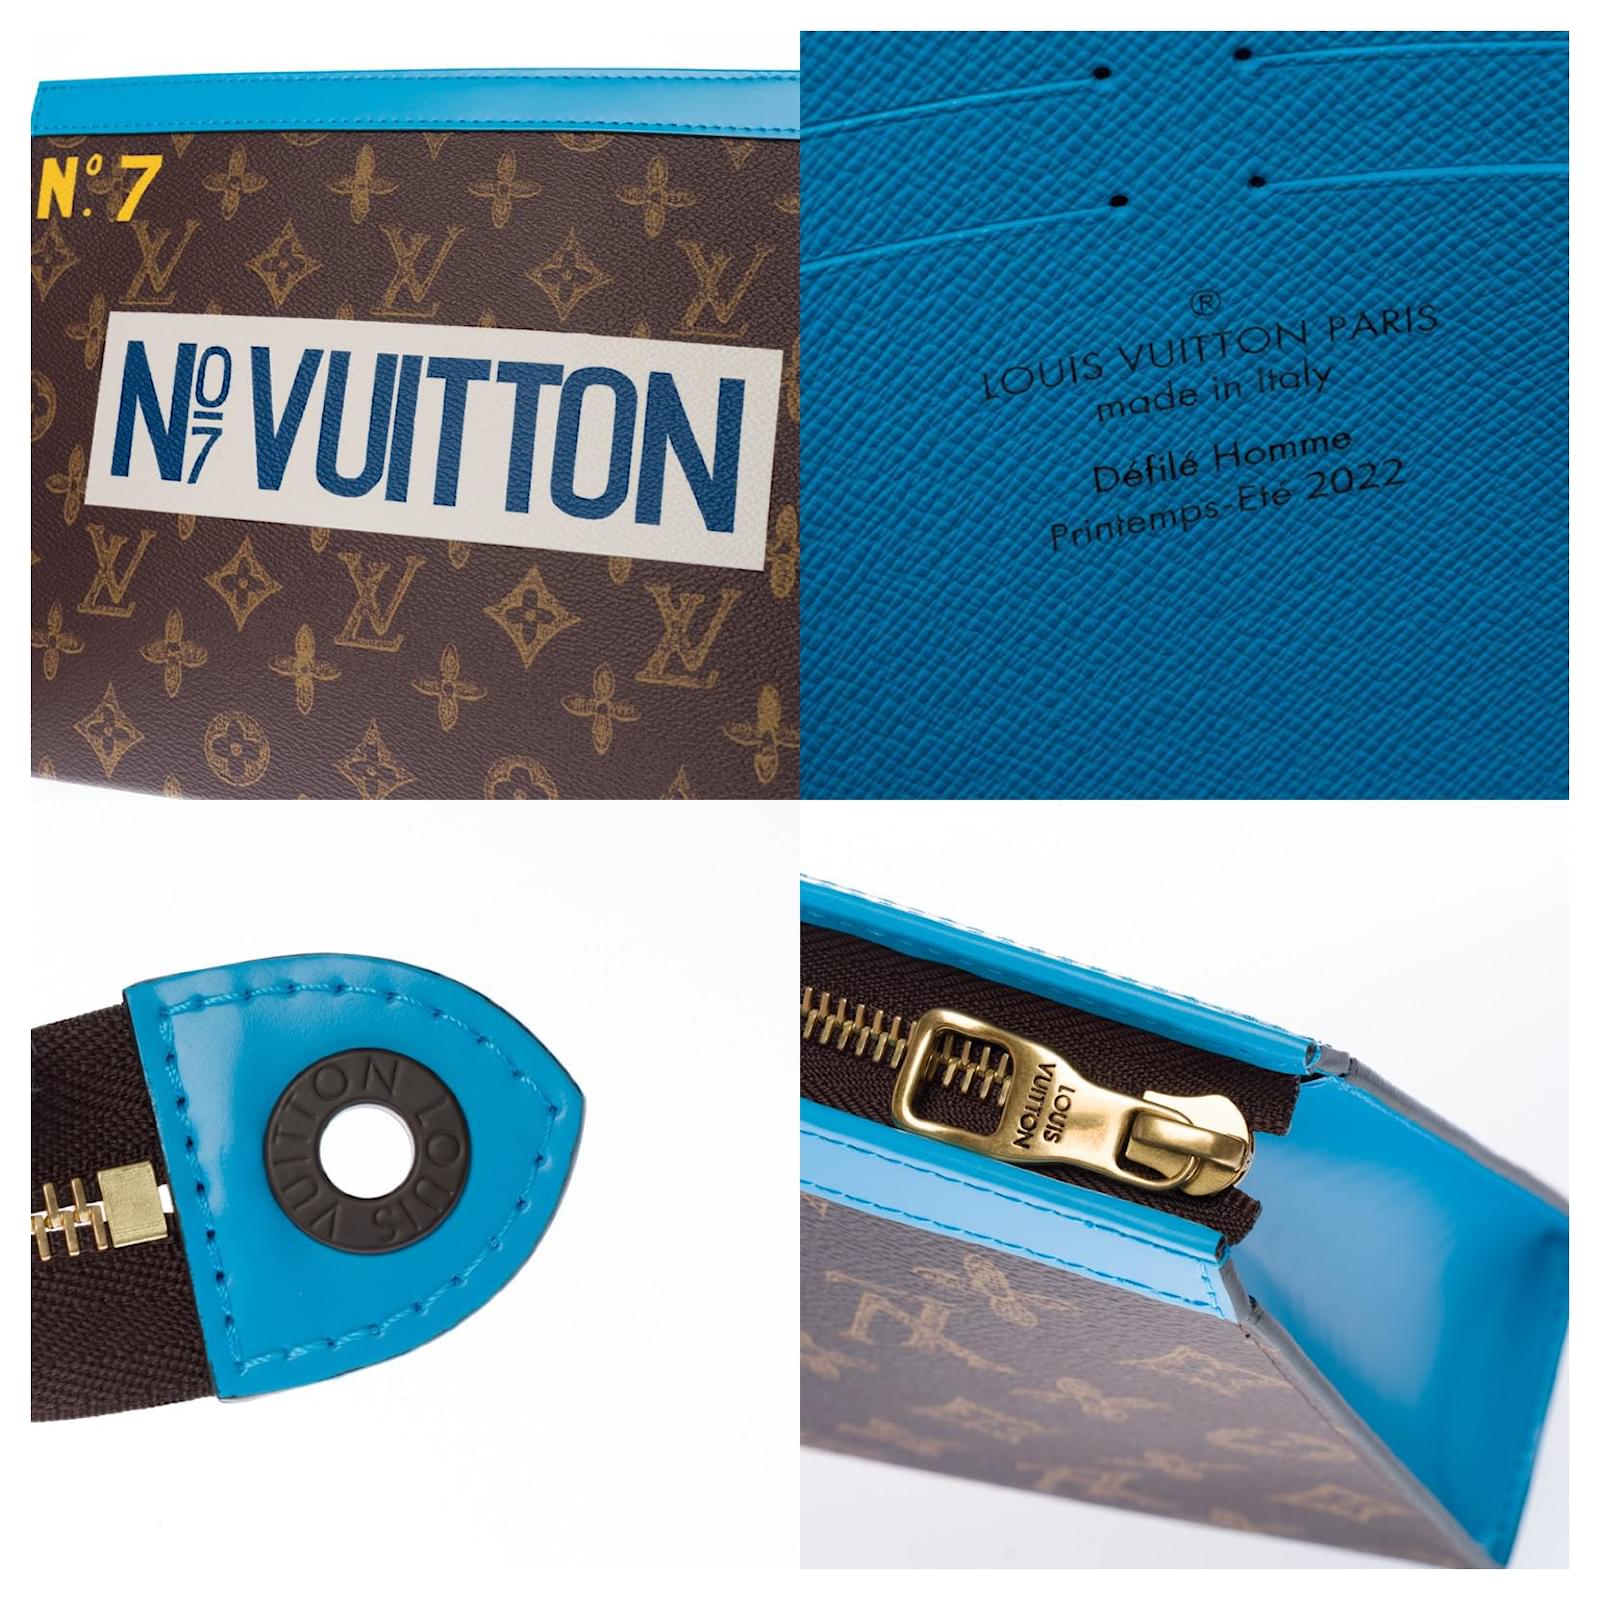 Louis Vuitton Marsupio LV outdoor Nero Pelle ref.235559 - Joli Closet